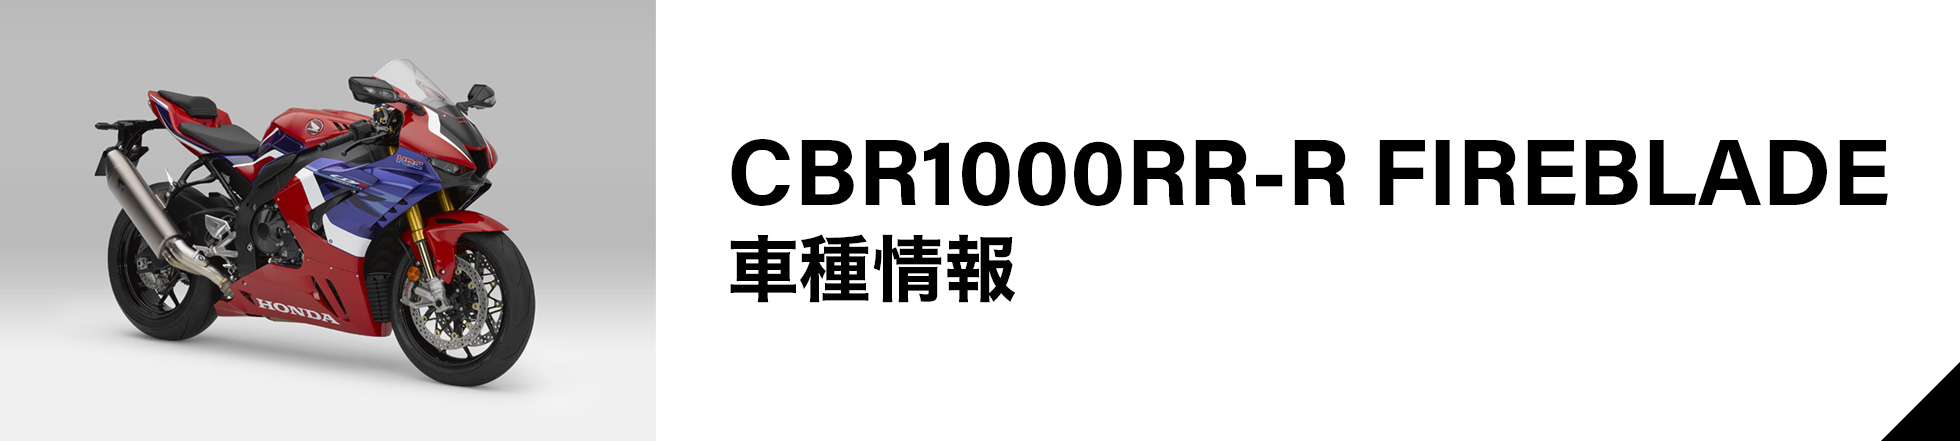 CBR1000RR-R FIREBLADE 車種情報